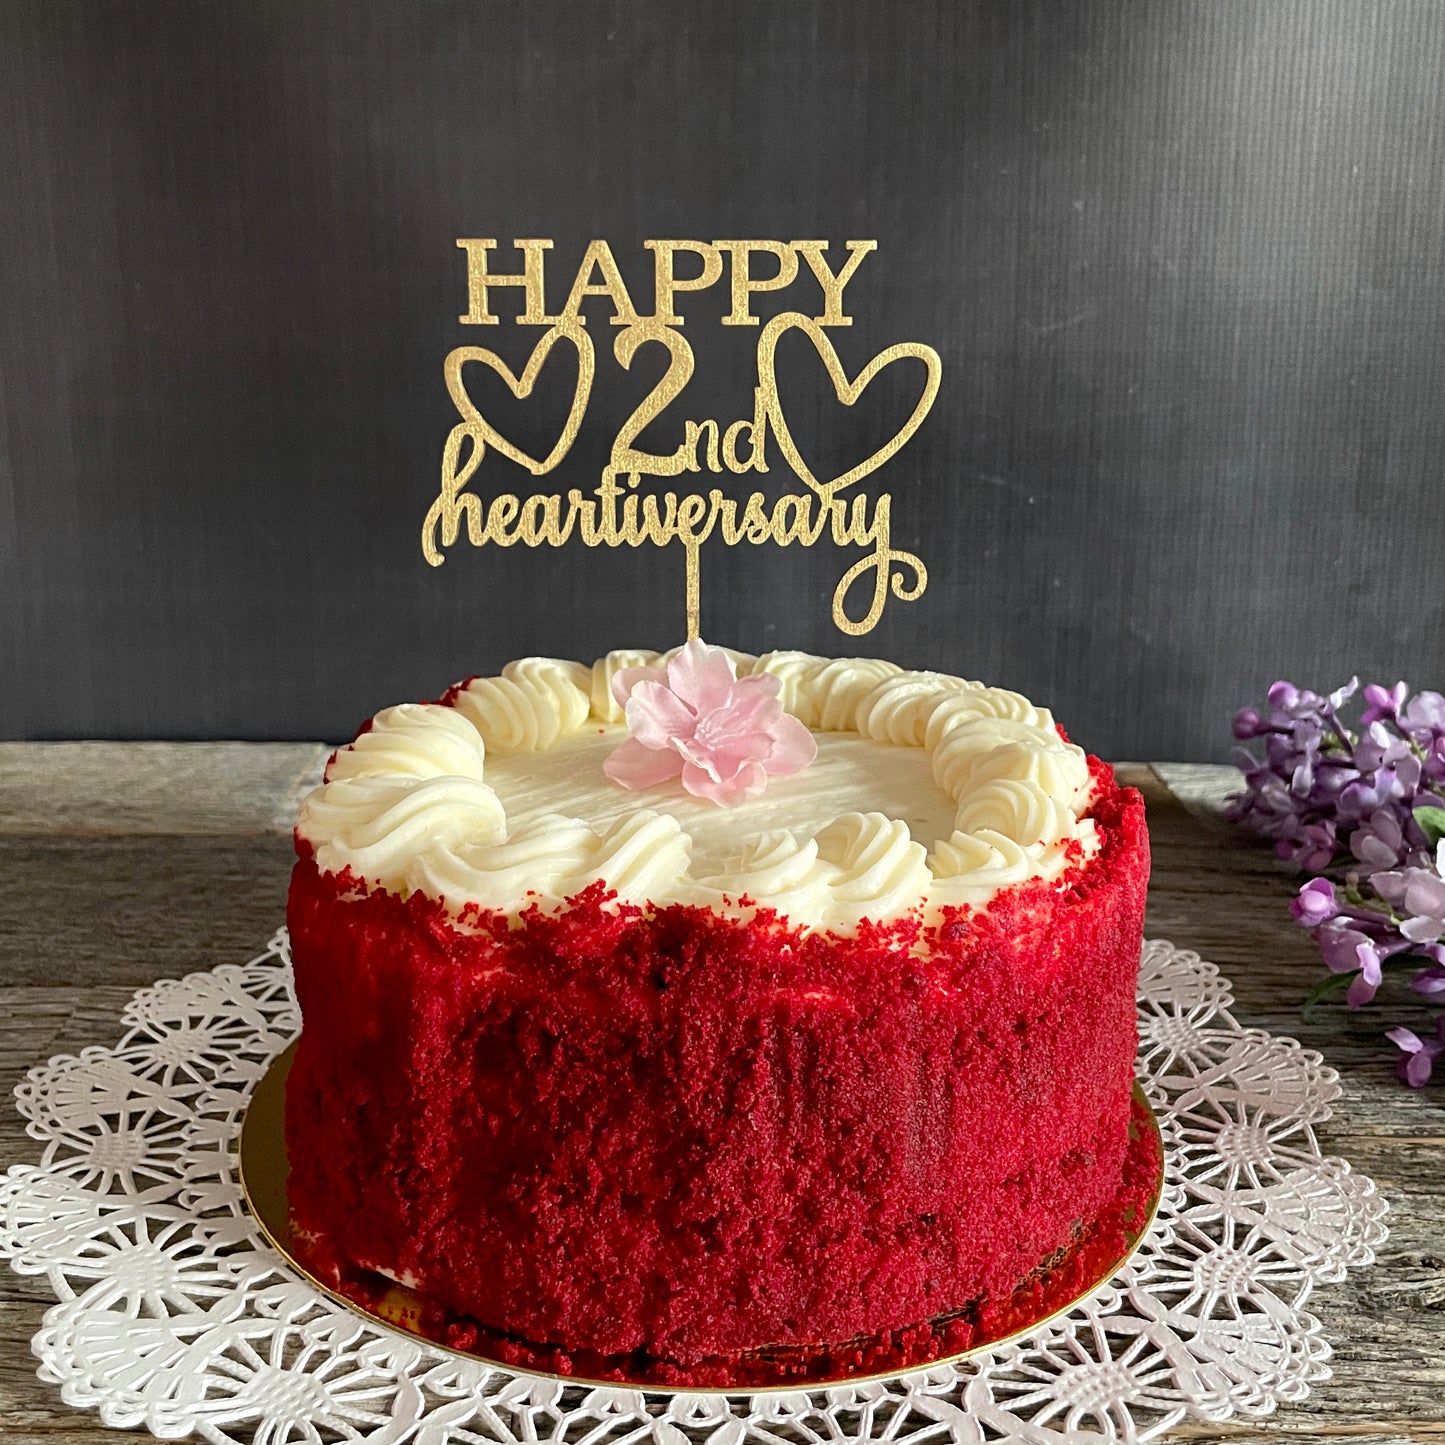 Custom Cake Topper for Heart Transplant Anniversary, Heartiversary, any year